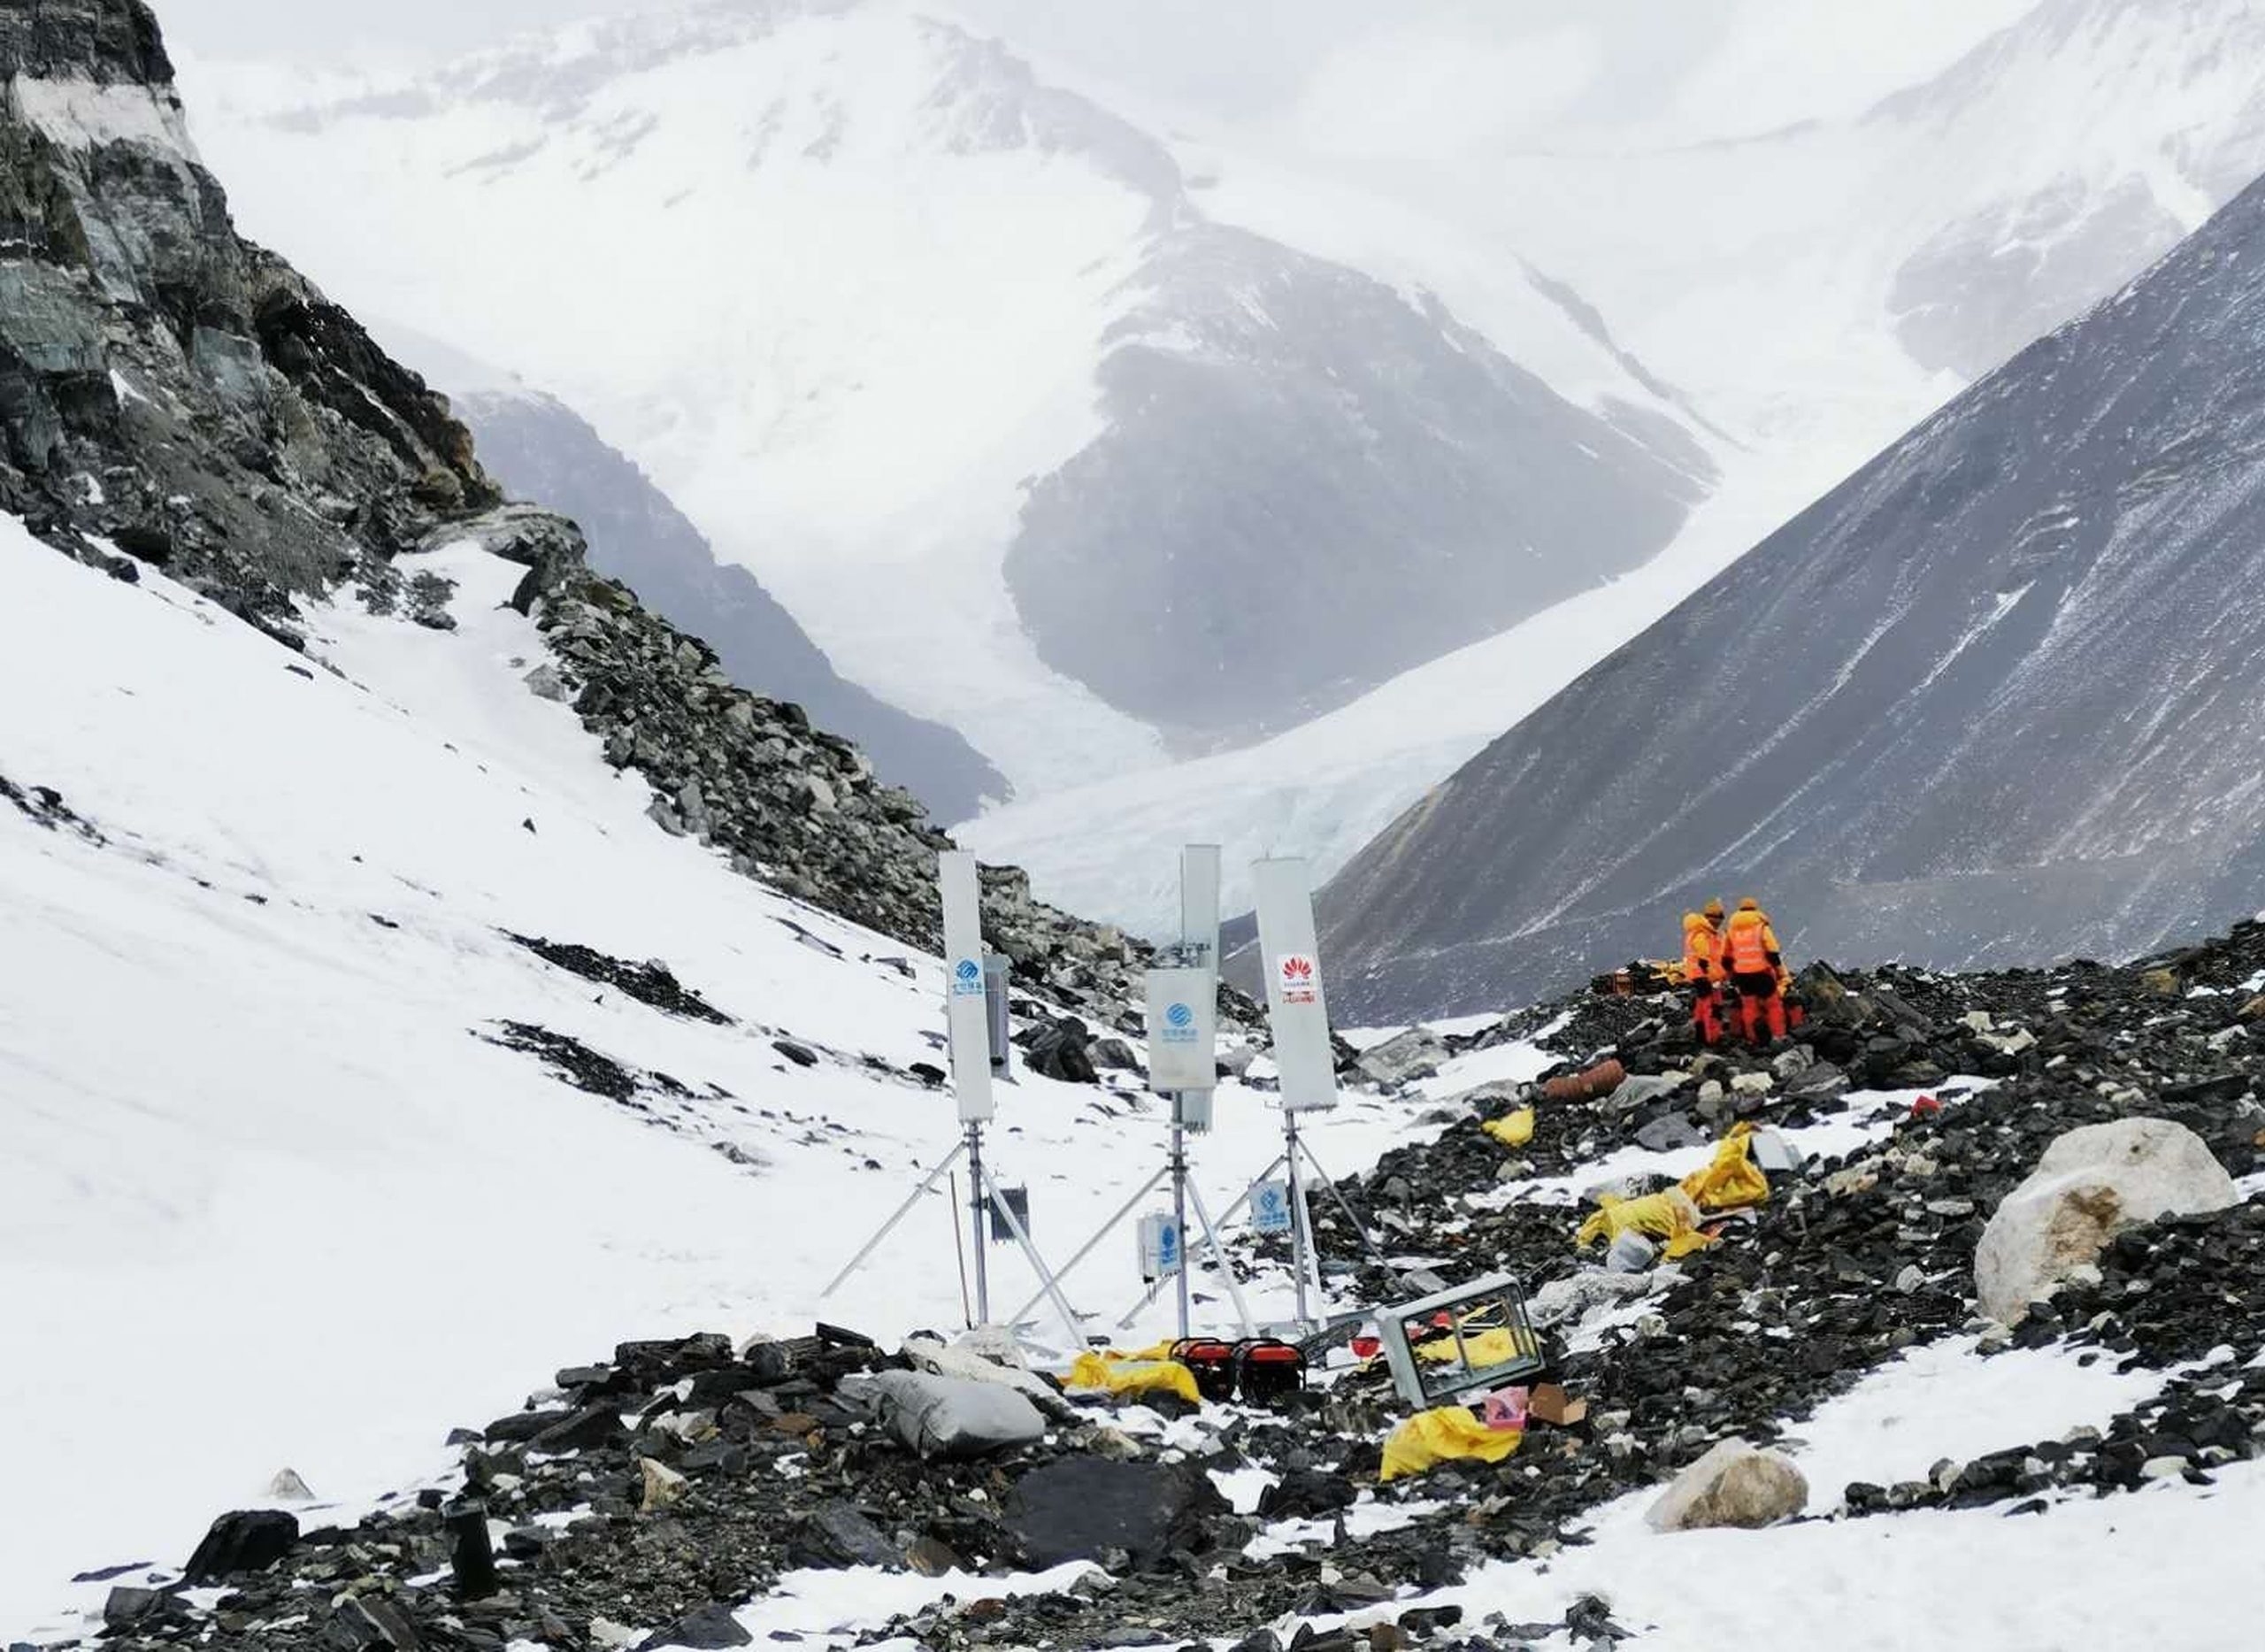 ไชน่า โมบายล์ และ หัวเว่ย ส่งมอบประสบการณ์ 5G ที่สูงที่สุดในโลก บนความสูงกว่า 6,500 เมตร เผยศักยภาพในการส่งมอบเครือข่าย ณ ยอดเขาเอเวอเรสต์